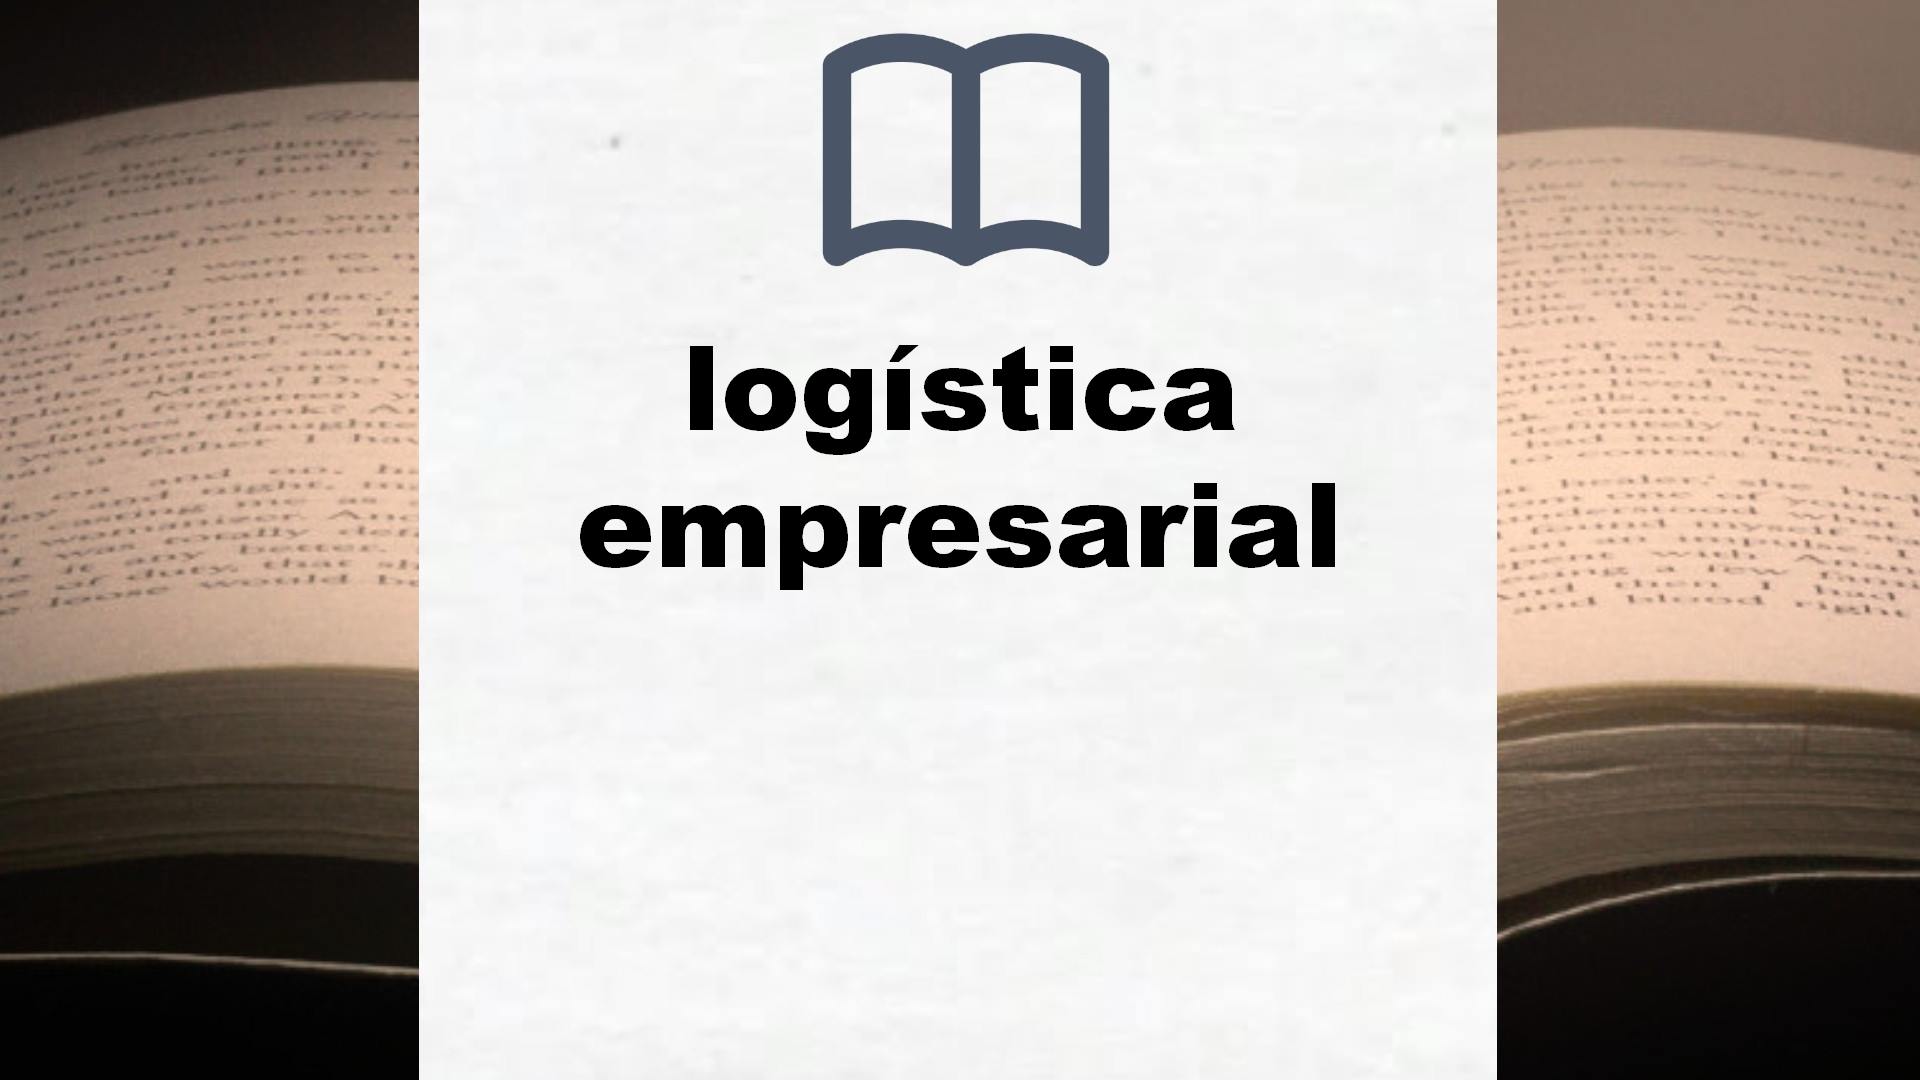 Libros sobre logística empresarial